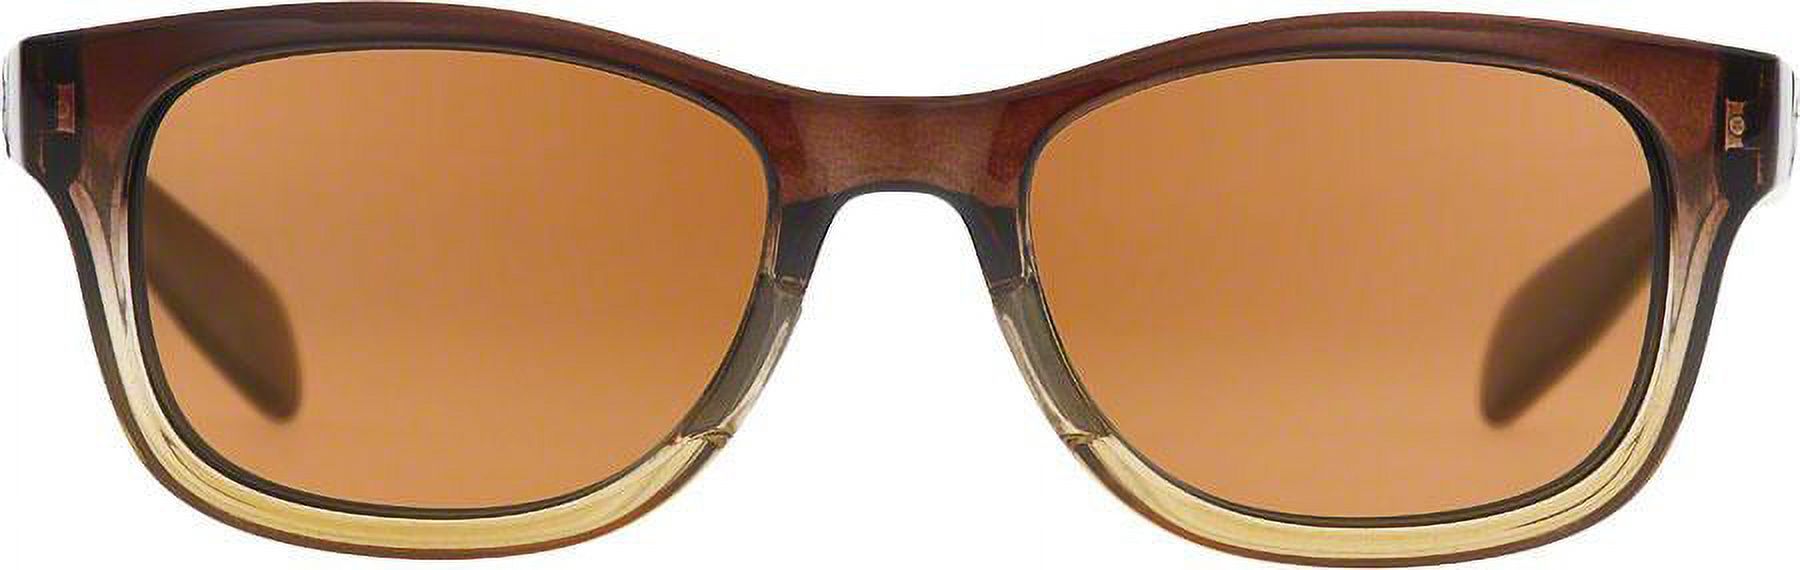 Highline Polarized Sunglasses - image 2 of 2